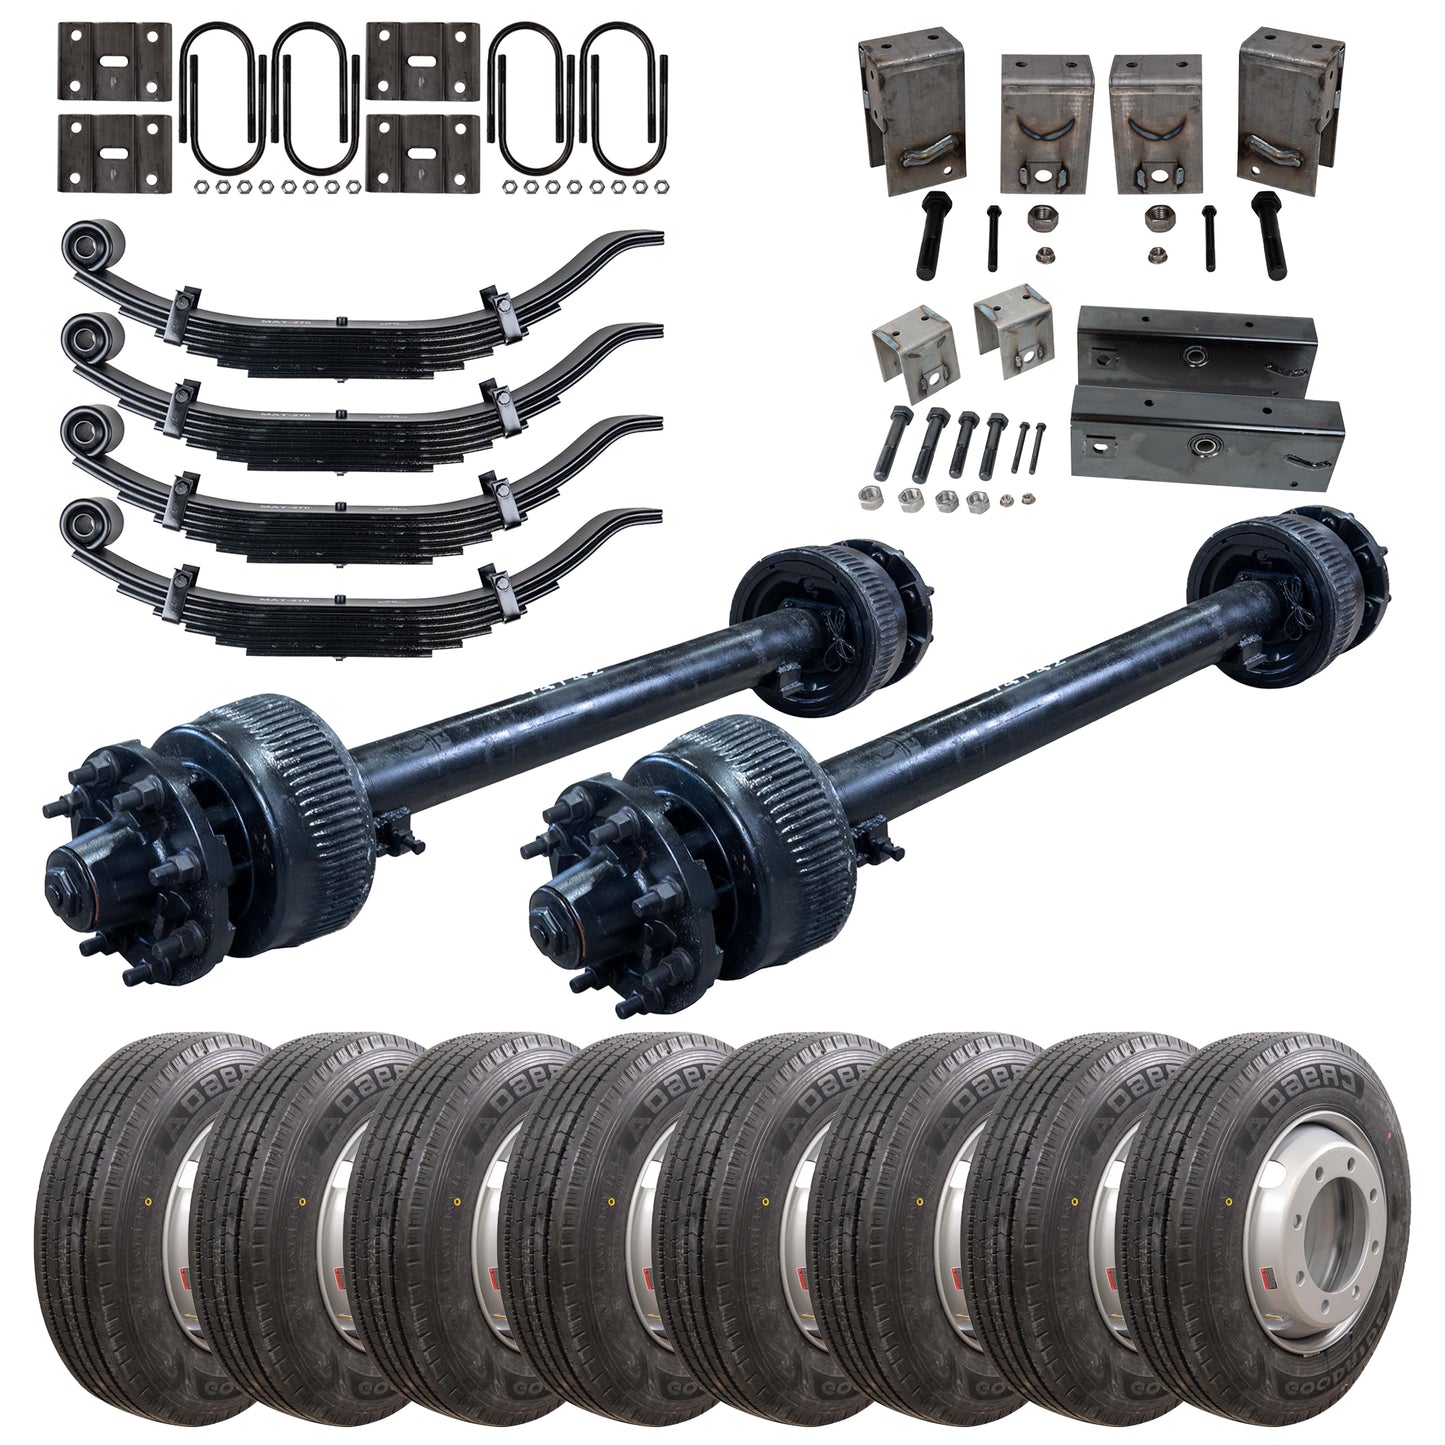 15,000 lb TK Tandem Axle Kit - 30K Capacity (Axle Series)